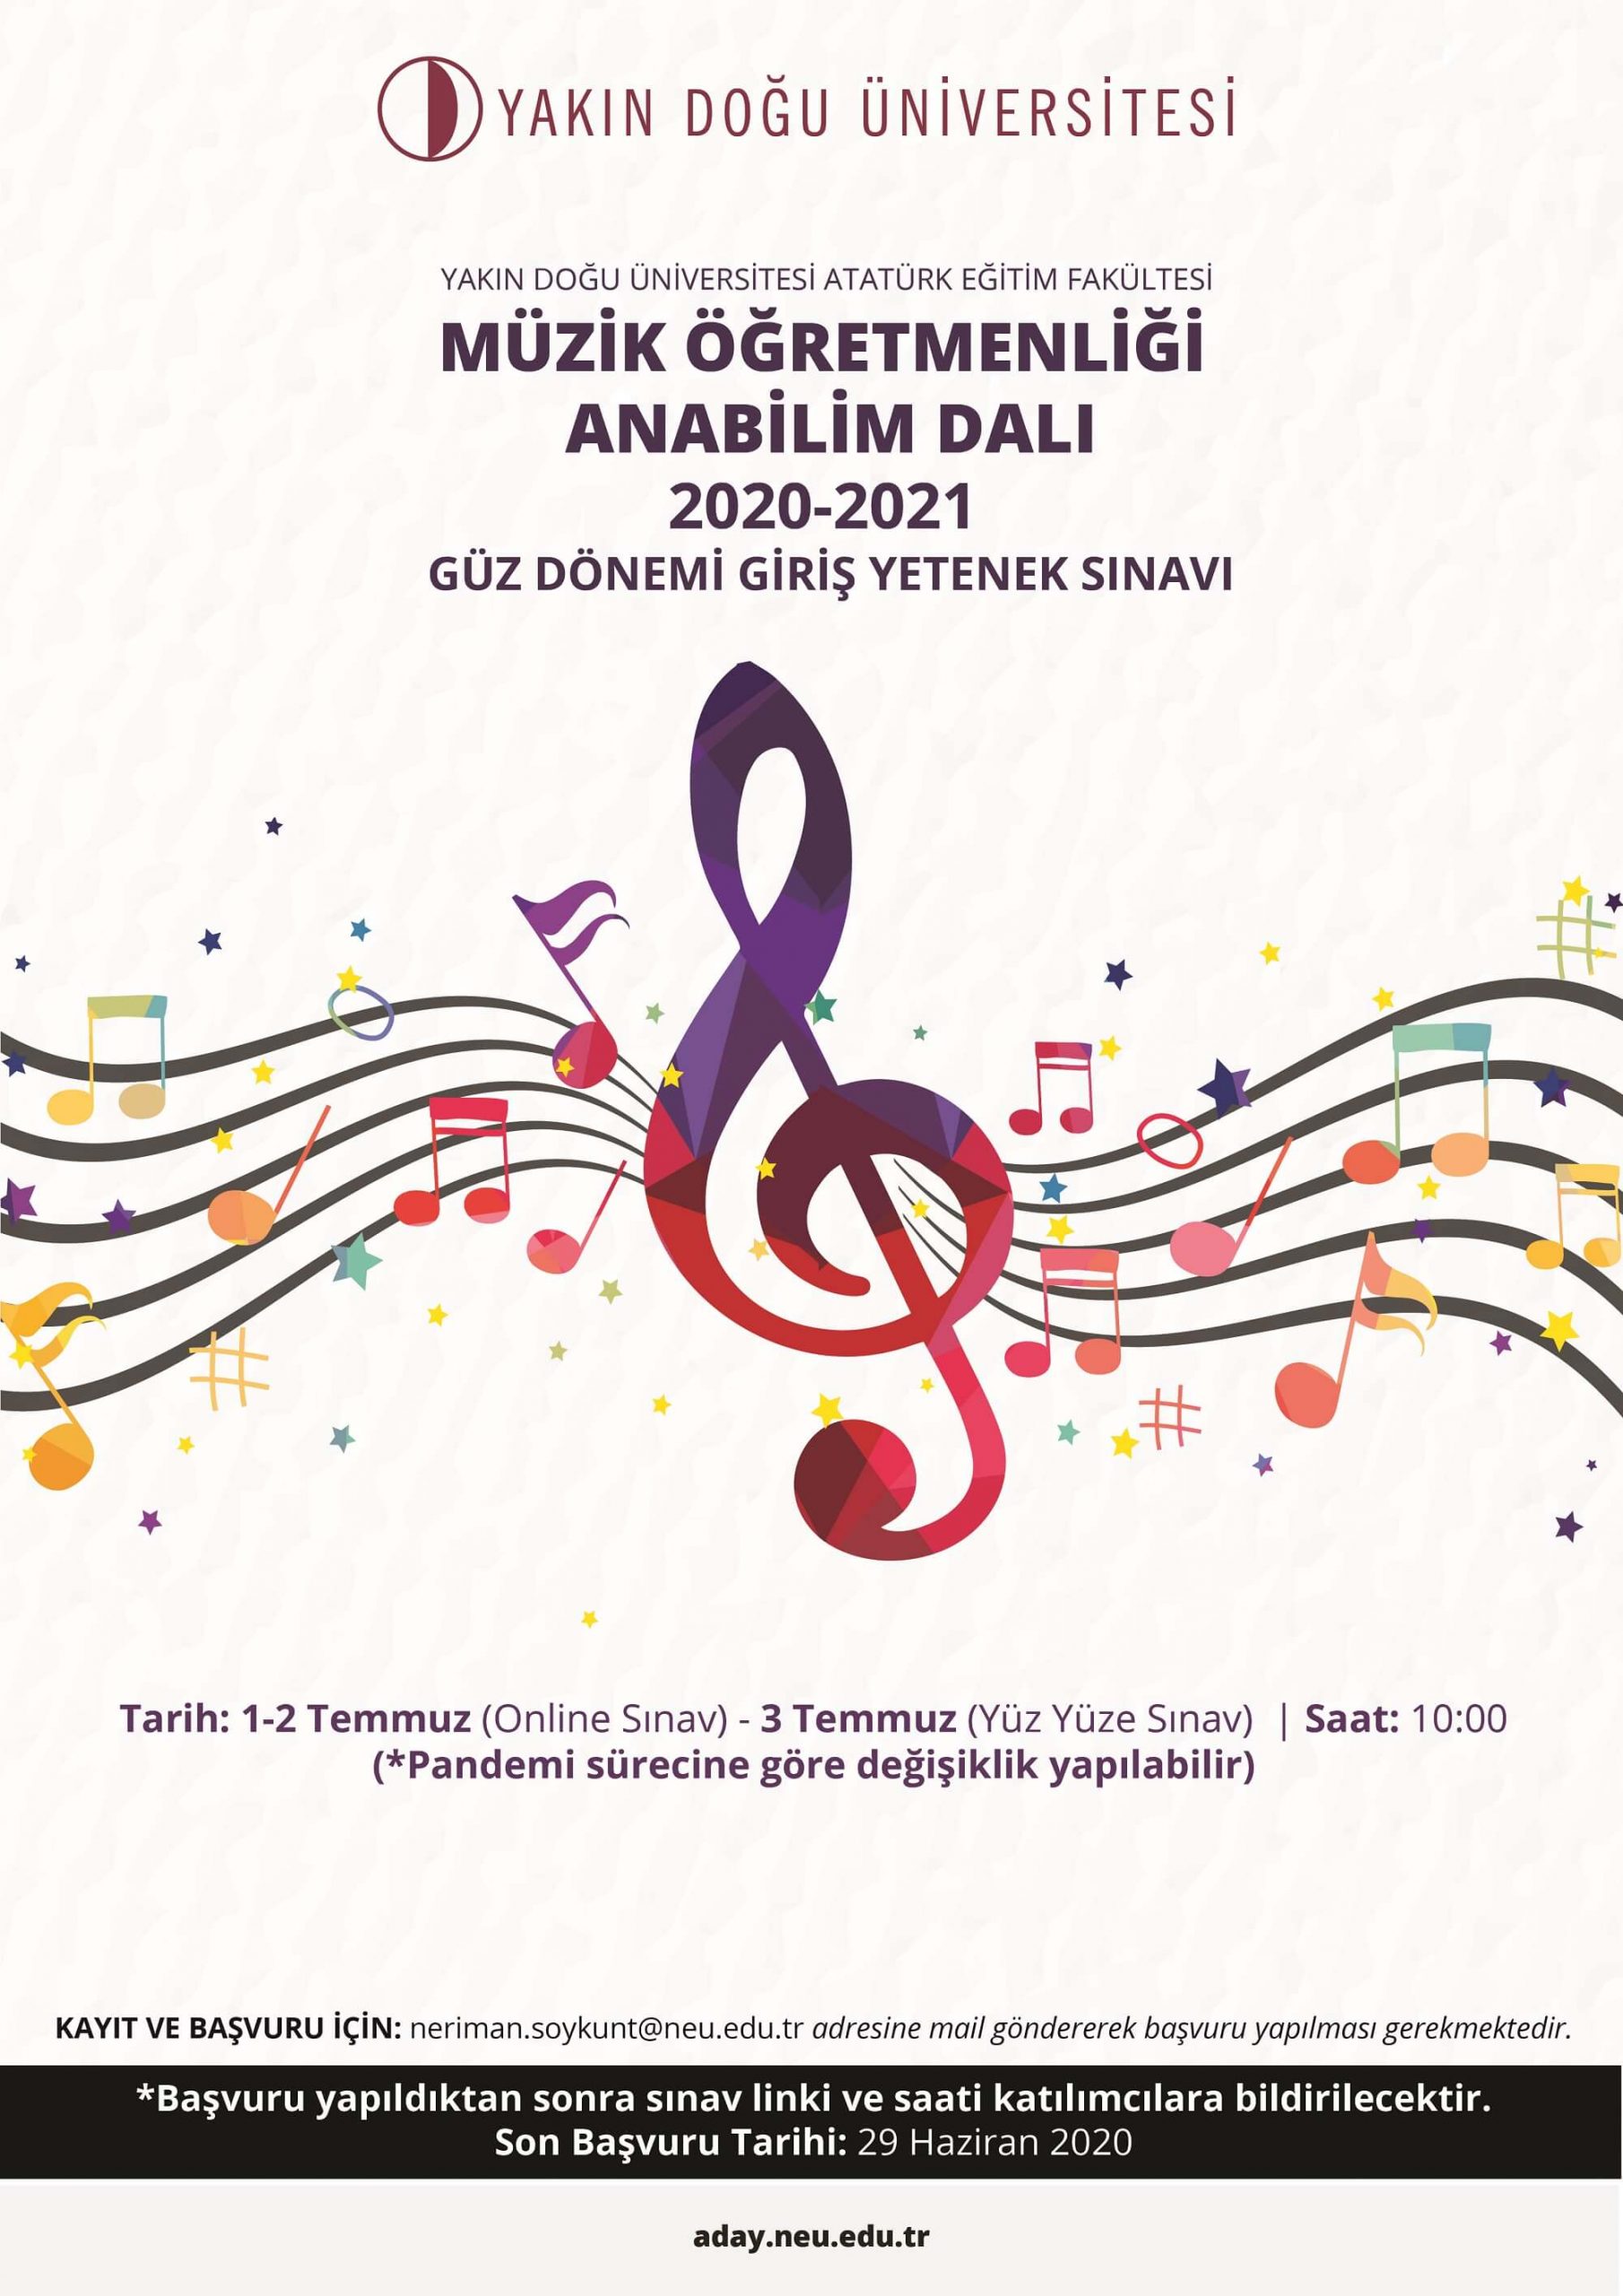 Yakın Doğu Üniversitesi Atatürk Eğitim Fakültesi Güzel Sanatlar Eğitimi Bölümü Müzik Öğretmenliği Anabilim Dalı 2020-2021 Öğretim Yılı için Lisans, Yüksek Lisans ve Doktora Başvuruları Sürüyor